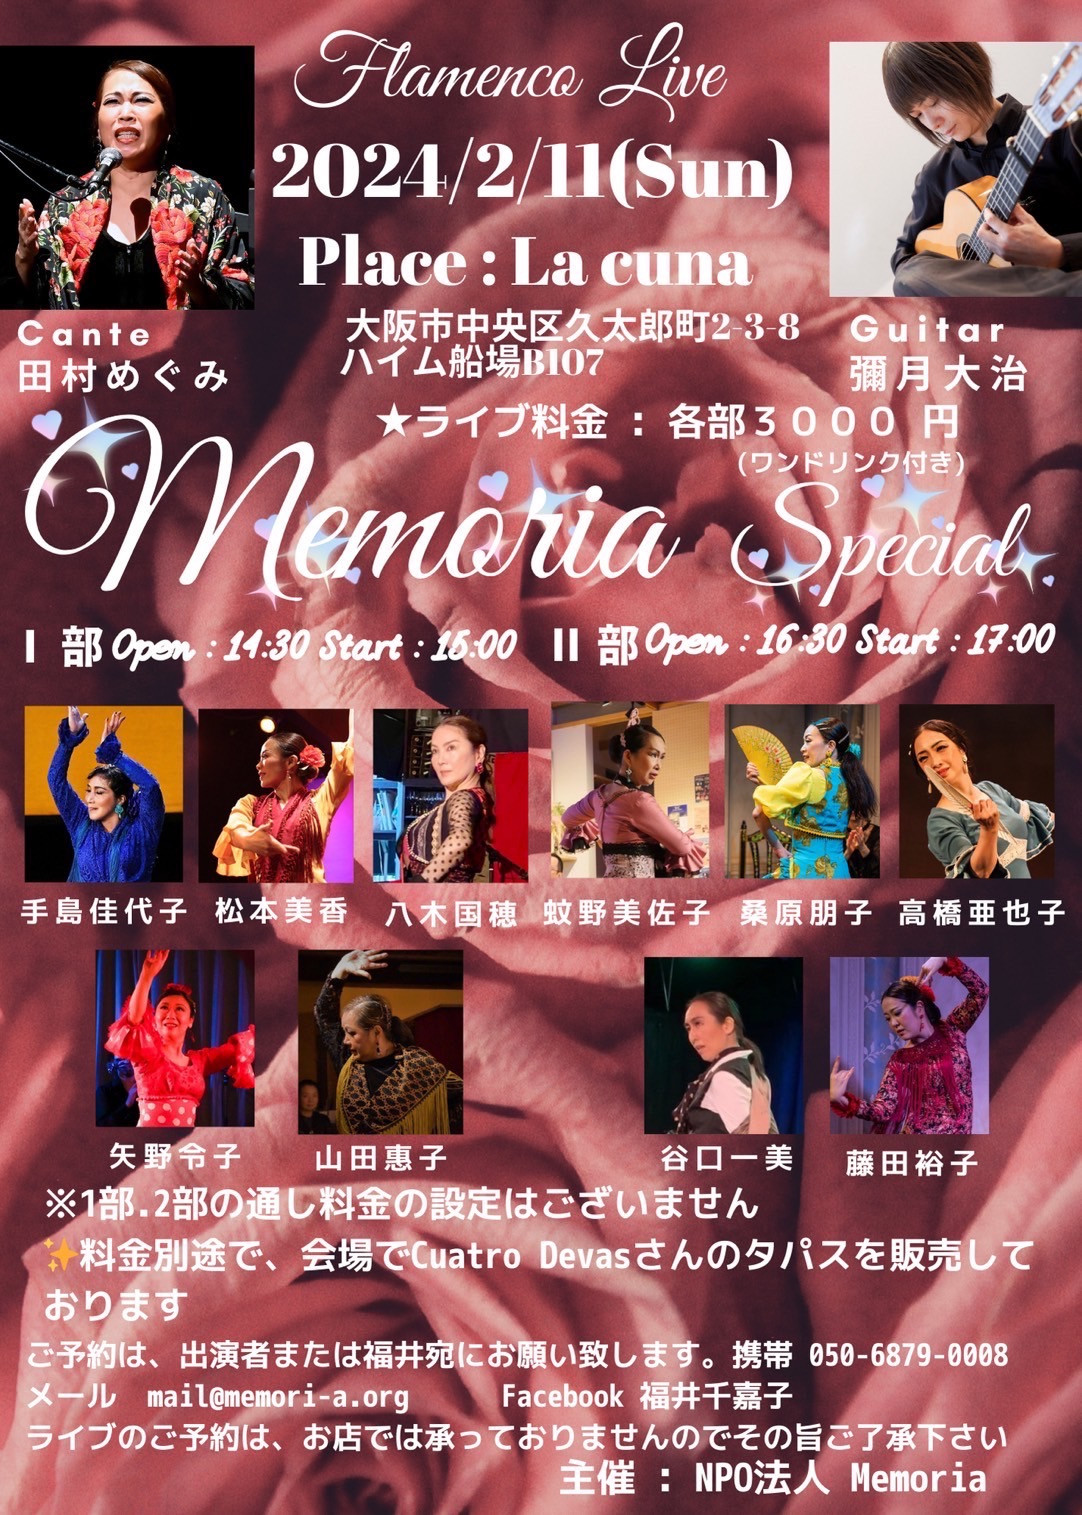 2024年2月11日(日)「Flamenco Live Memoria Special」開催